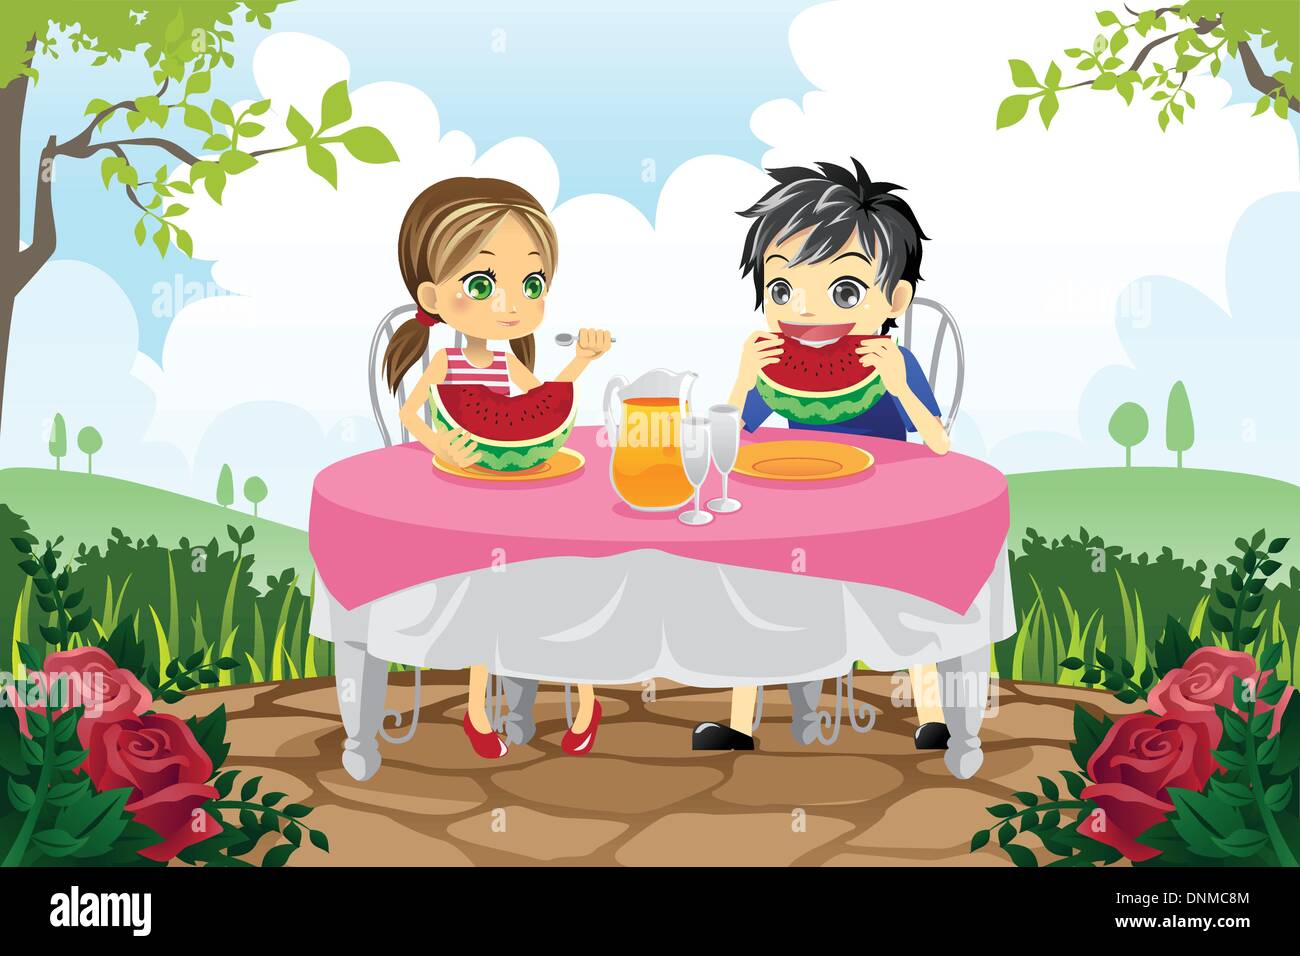 Eine Vektor-Illustration von zwei Kinder essen Wassermelone in einem park Stock Vektor